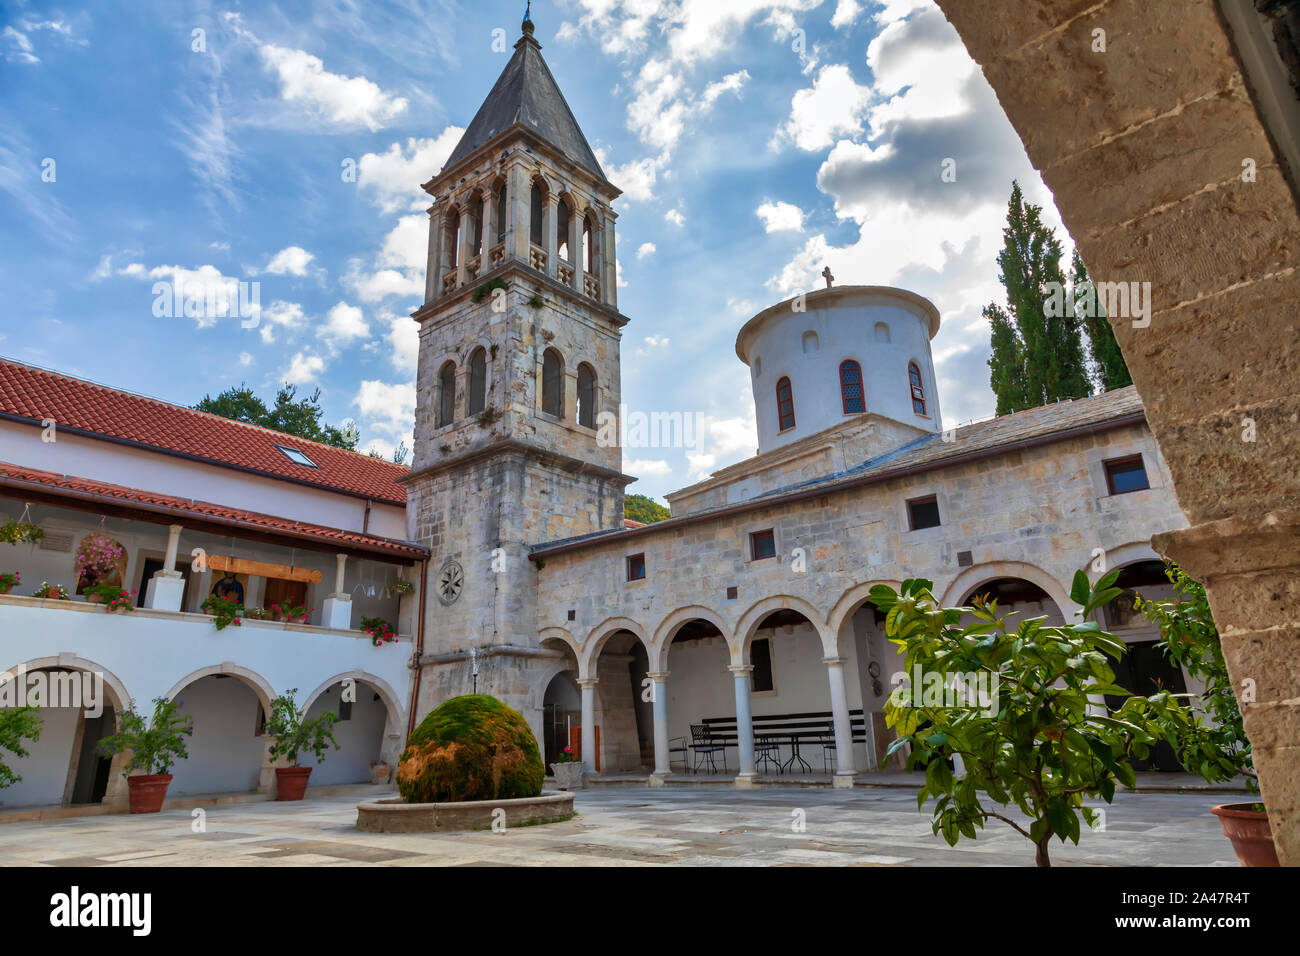 Il monastero Krka. Il XIV secolo Chiesa Ortodossa Serba monastero dedicato a San Michele Arcangelo. Situato nel Parco Nazionale di Krka, Croazia. Immagine Foto Stock